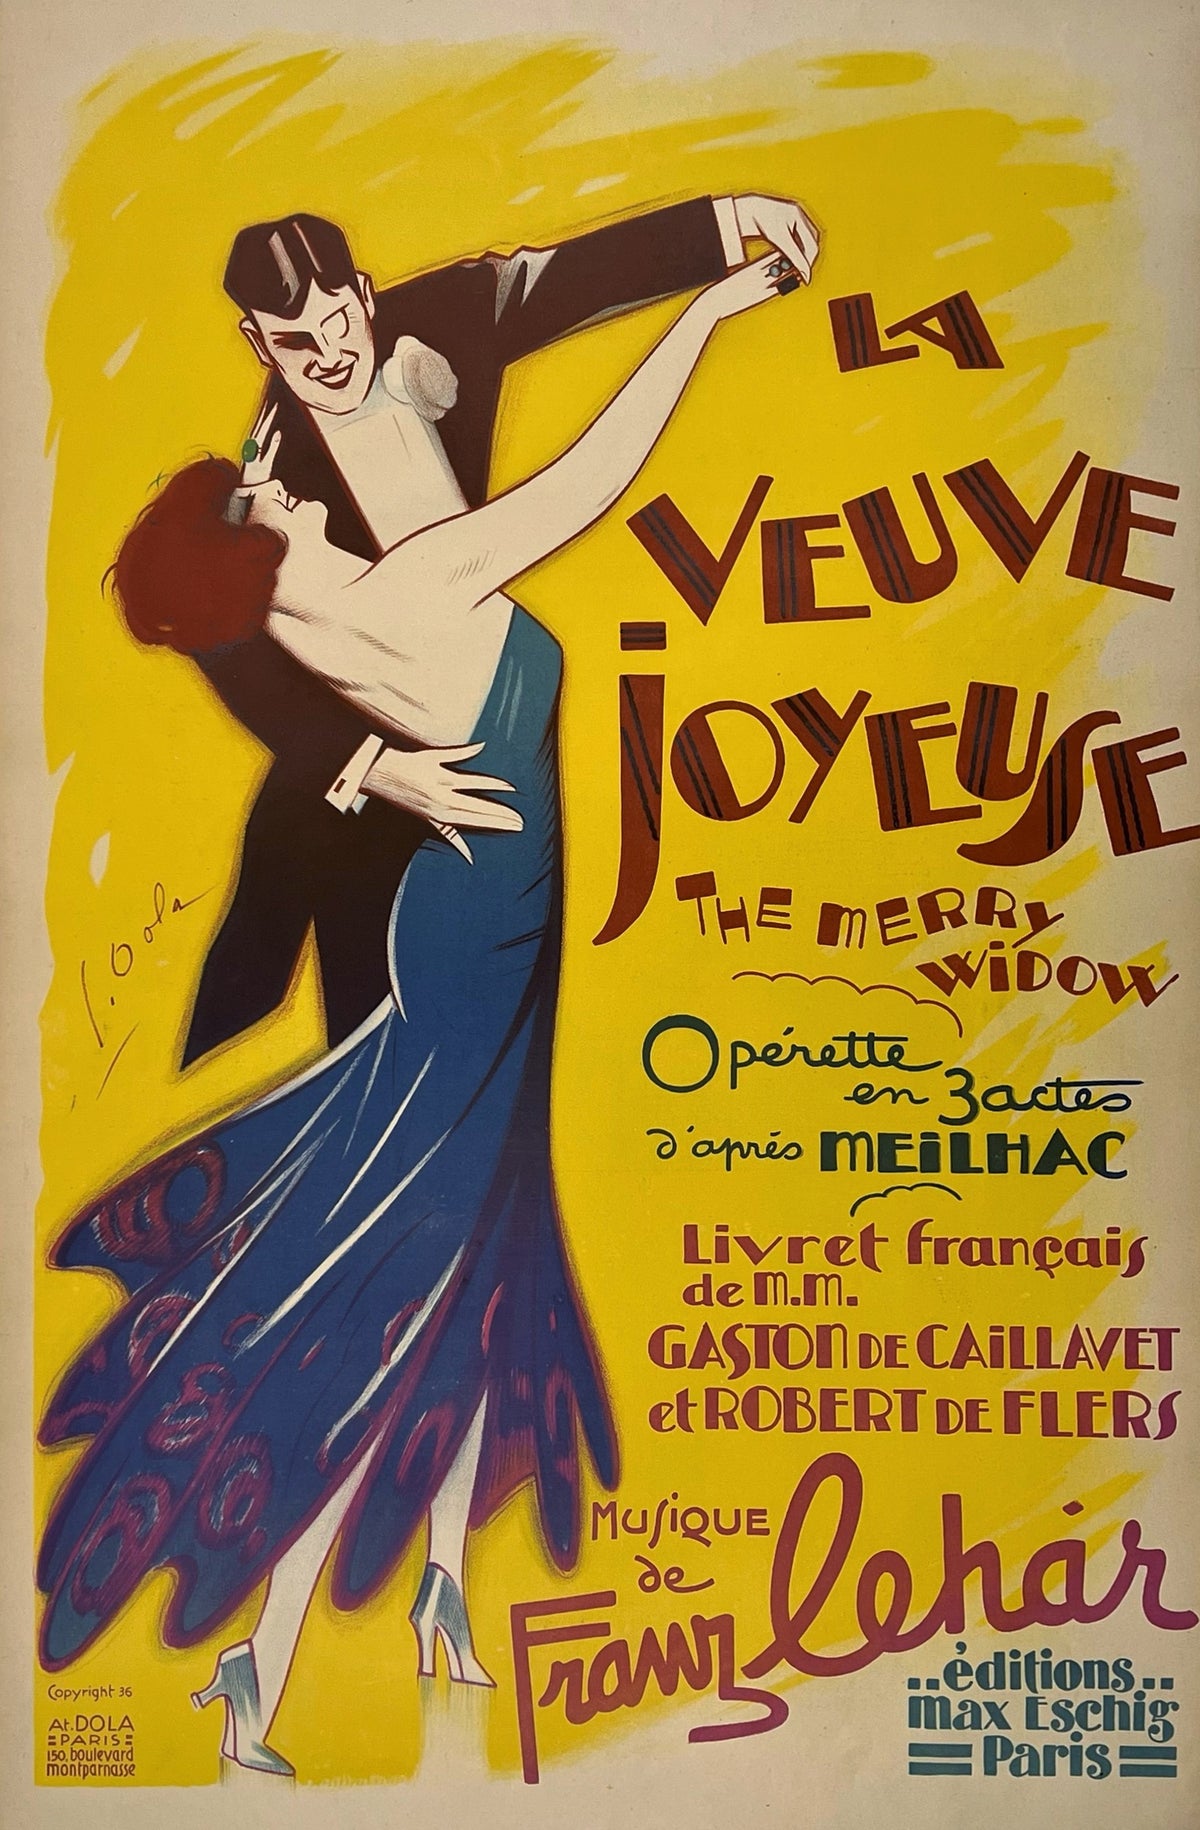 La Veuve Joyeuse by Georges Dola - Authentic Vintage Poster